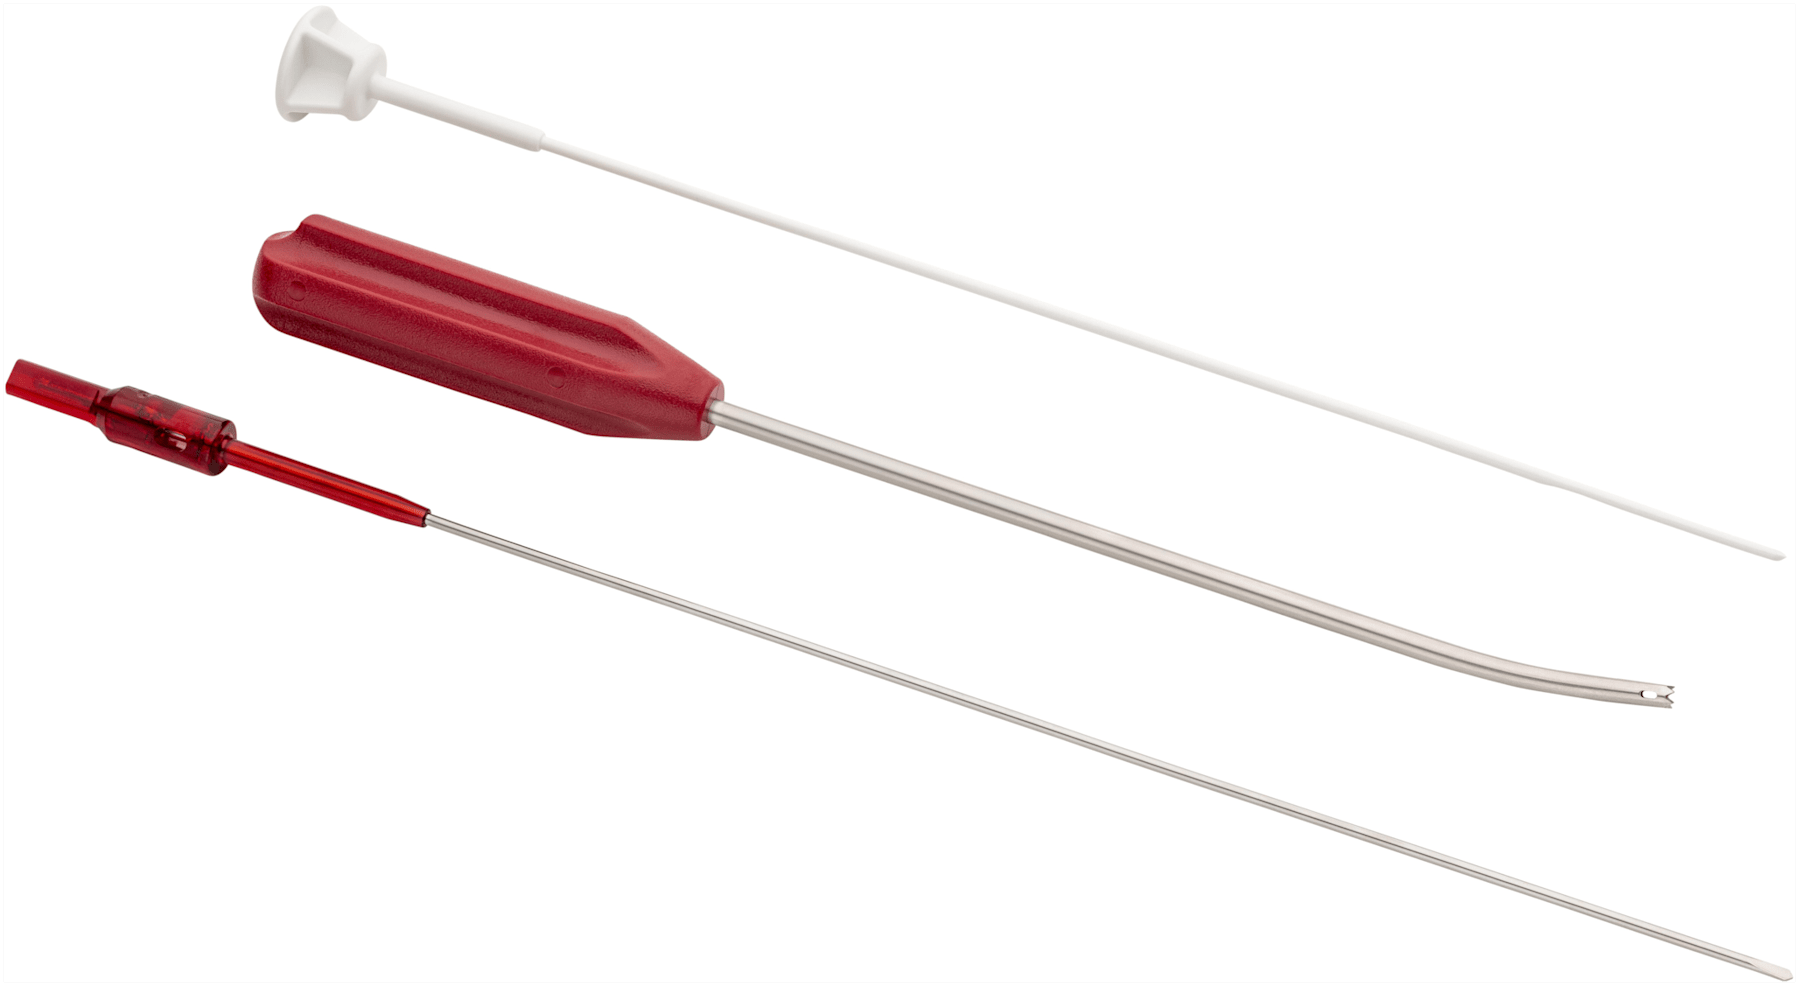 Einwegkit für FiberTak Soft-Anker mit einmal verwend. flexiblem Bohrer,gebogenem Spear und Obturator